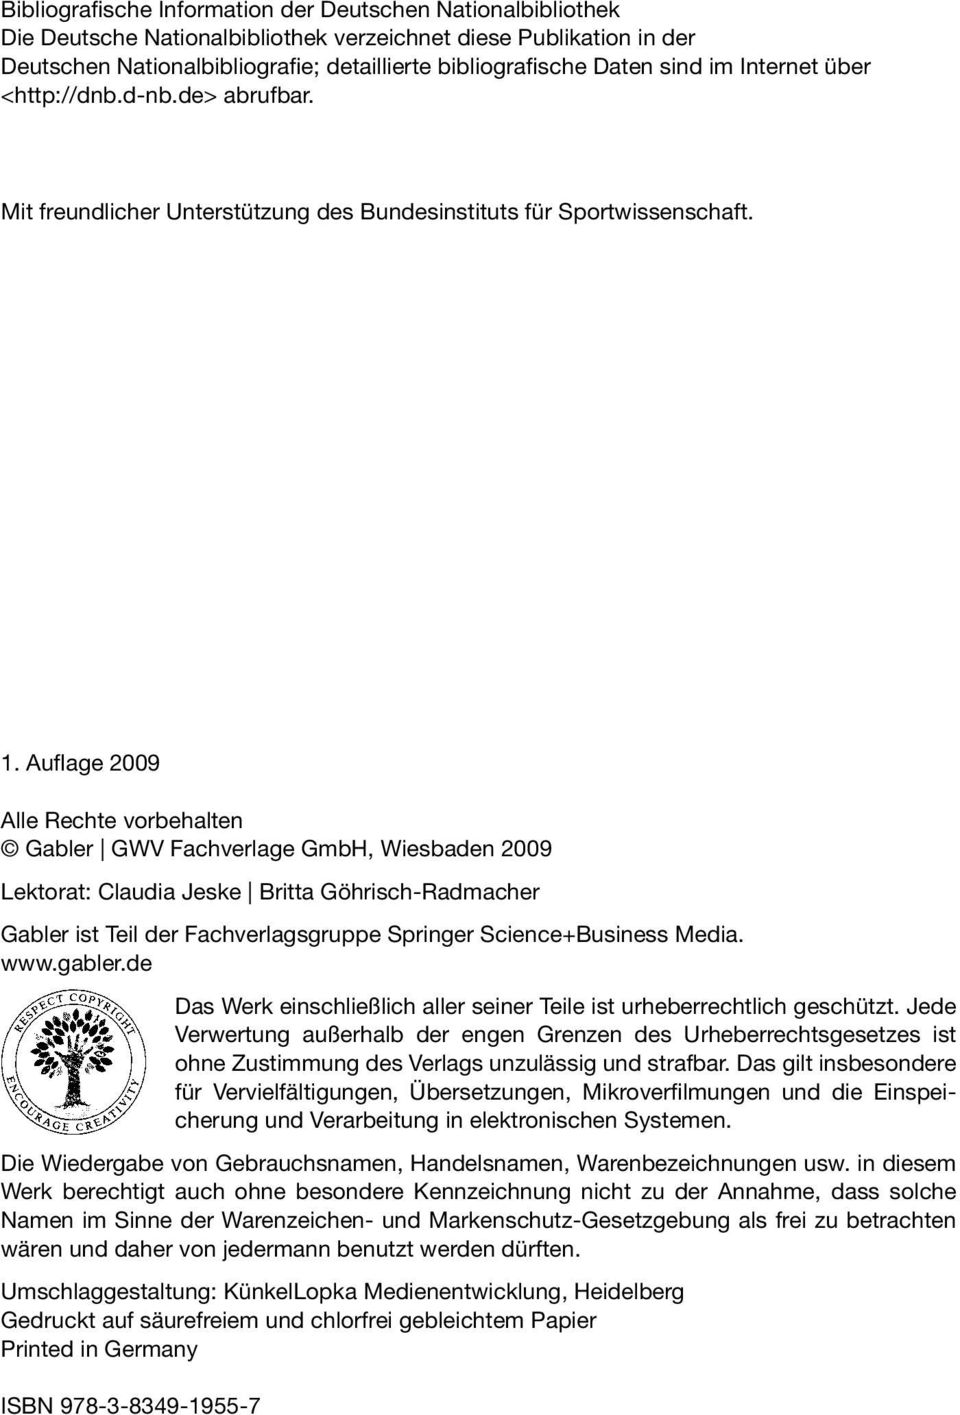 Auflage 2009 Alle Rechte vorbehalten Gabler GWV Fachverlage GmbH, Wiesbaden 2009 Lektorat: Claudia Jeske Britta Göhrisch-Radmacher Gabler ist Teil der Fachverlagsgruppe Springer Science+Business